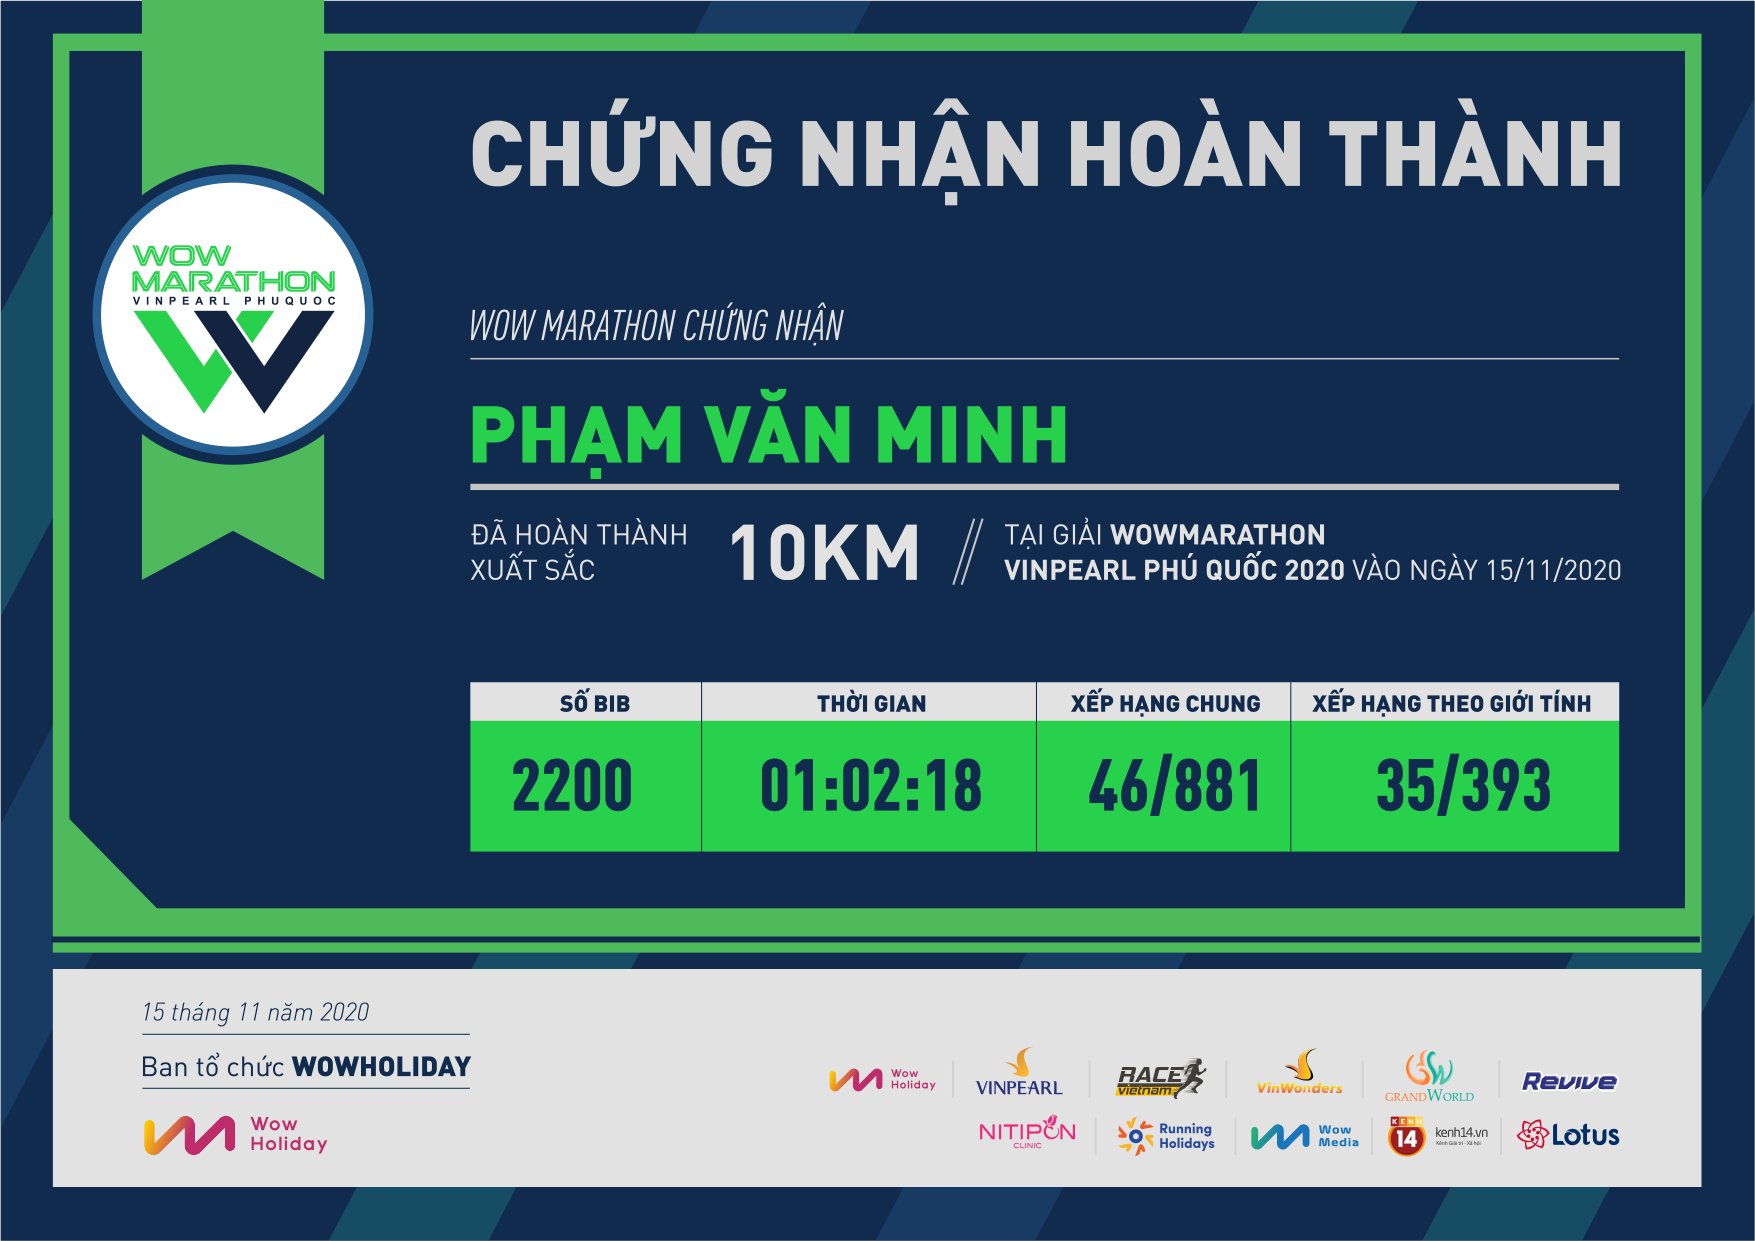 2200 - Phạm Văn Minh